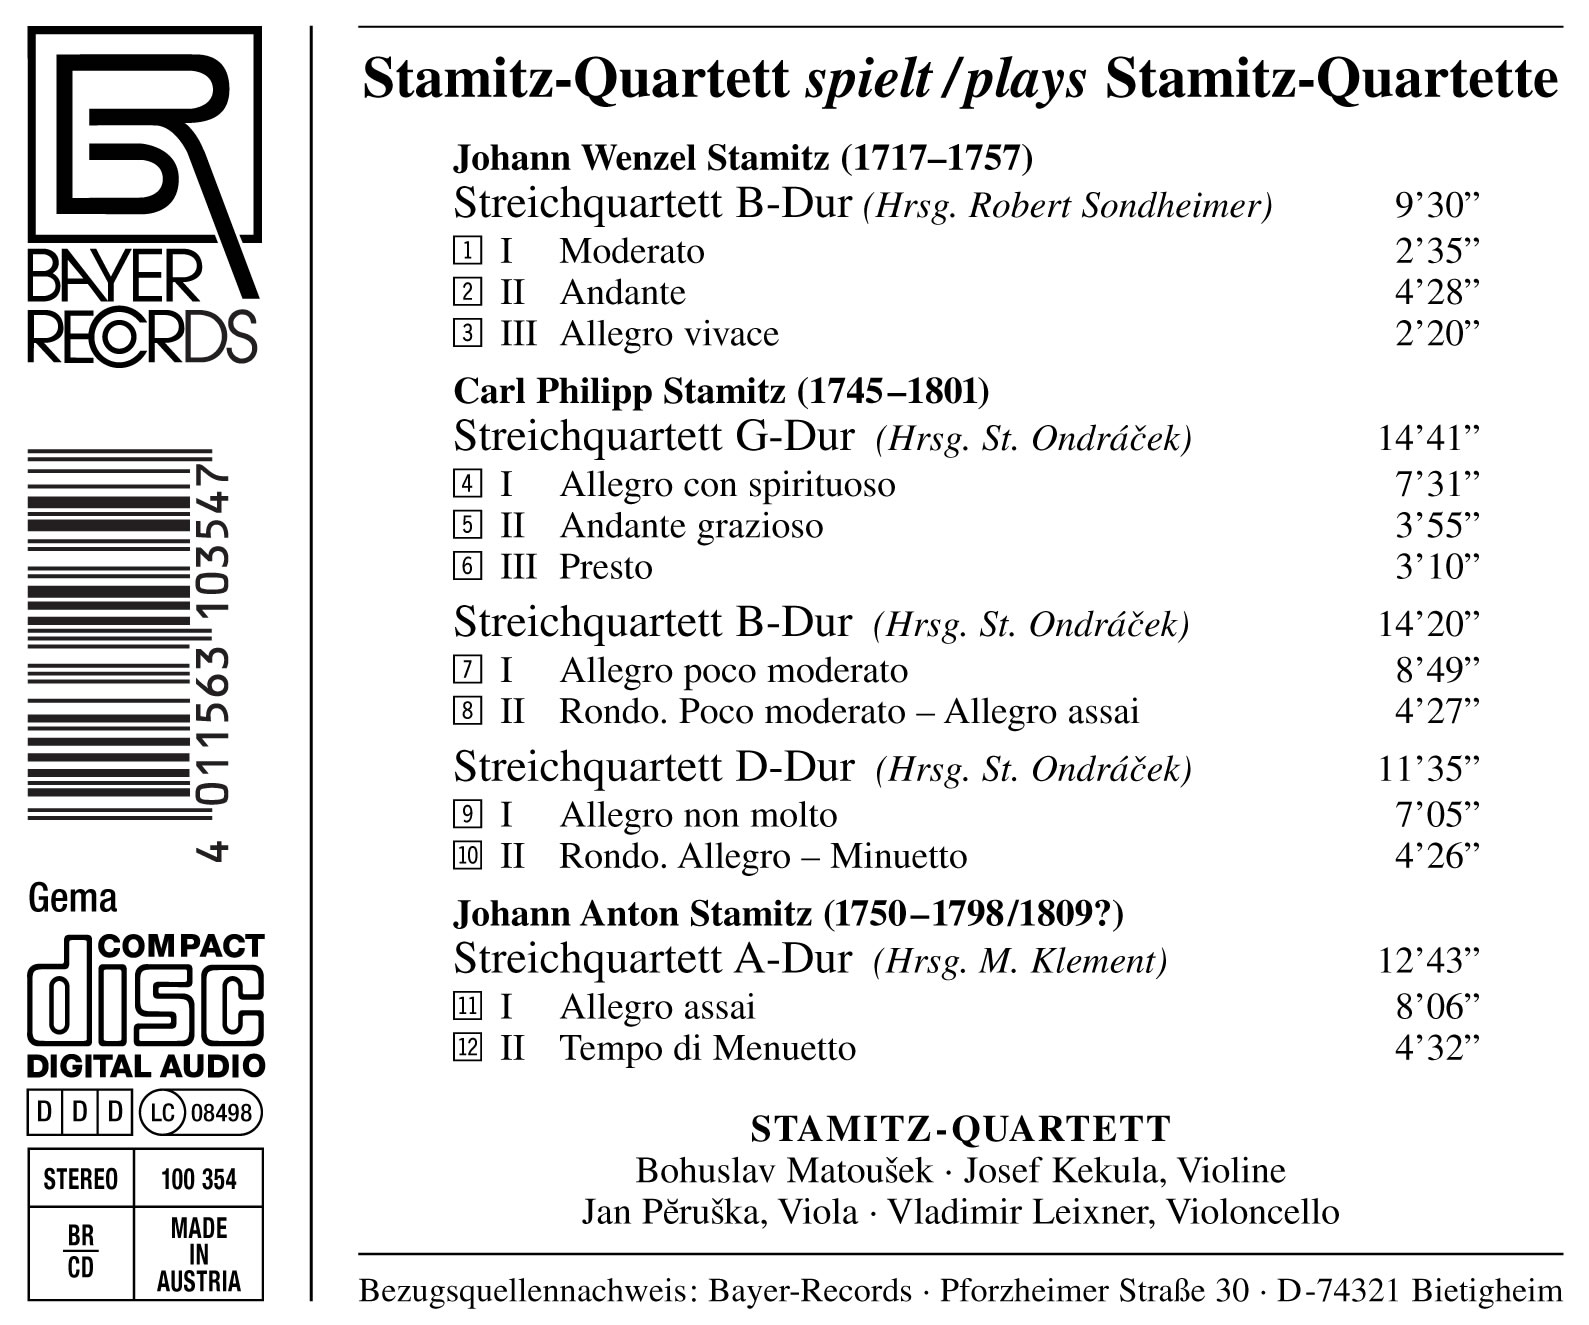 Stamitz-Quartett spielt